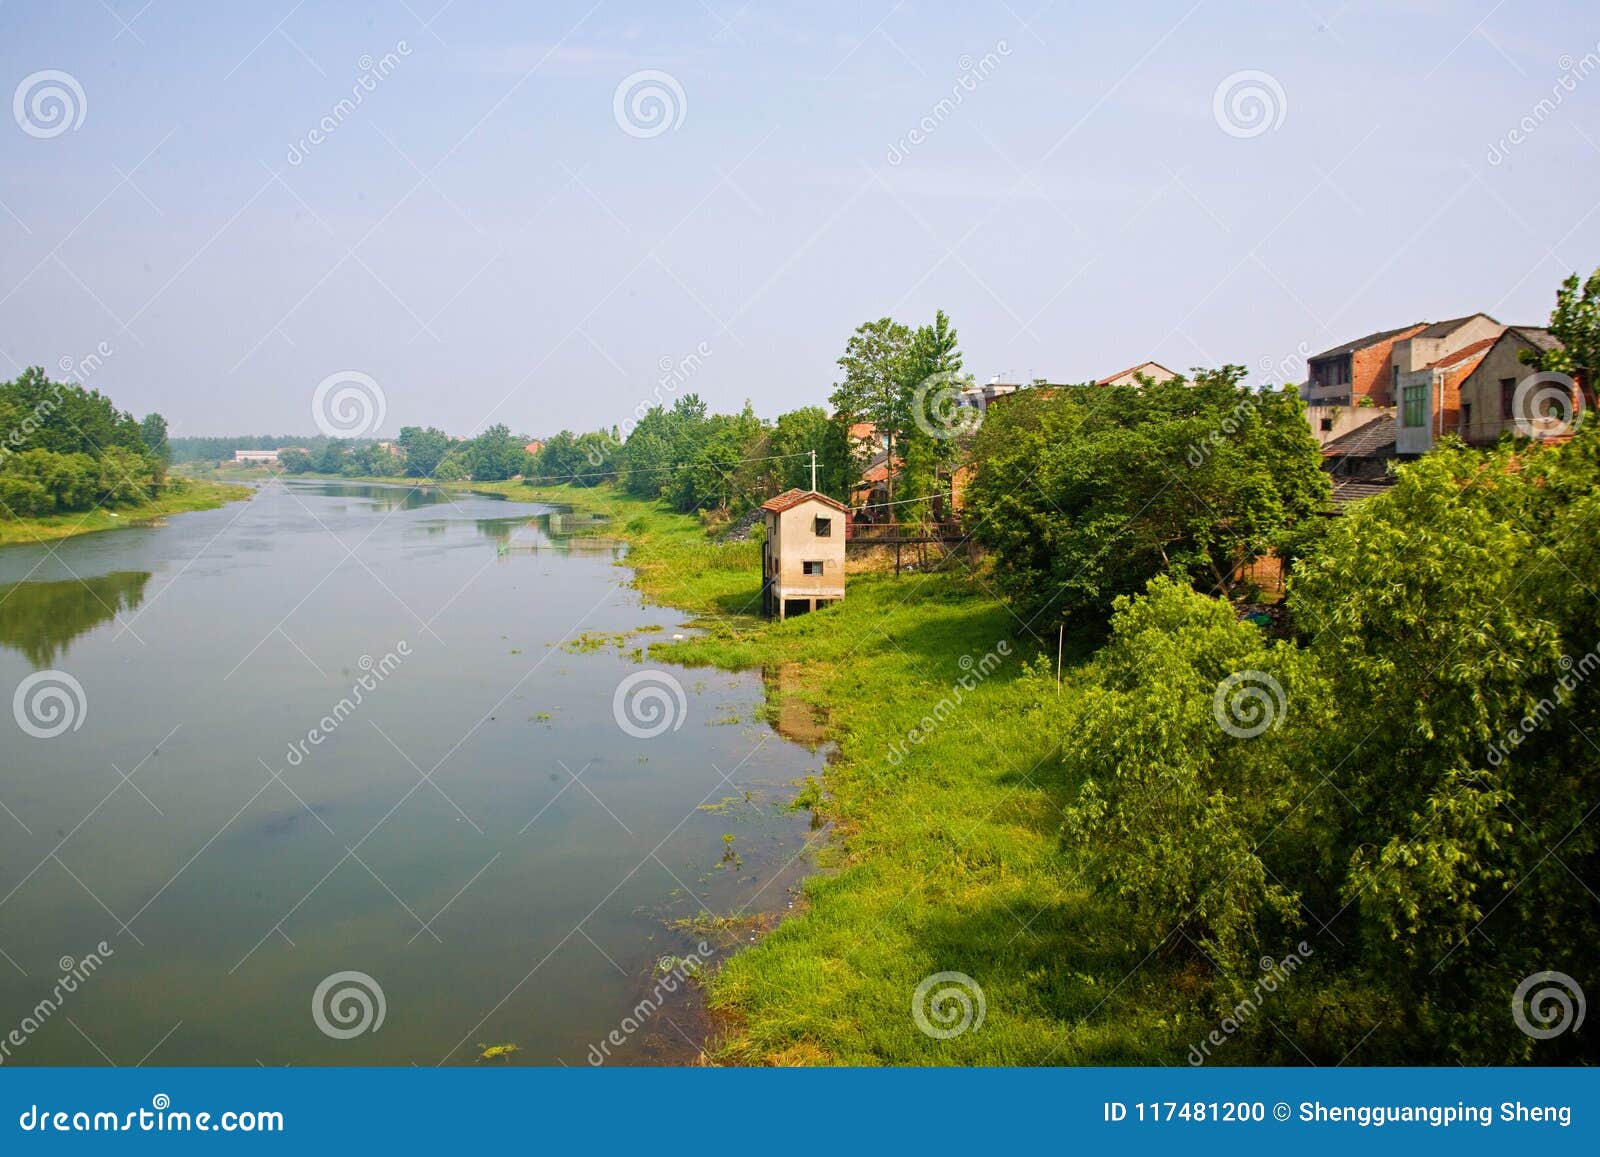 Hubei Xiantao Tong Shun River. Groene en mooie rivieren